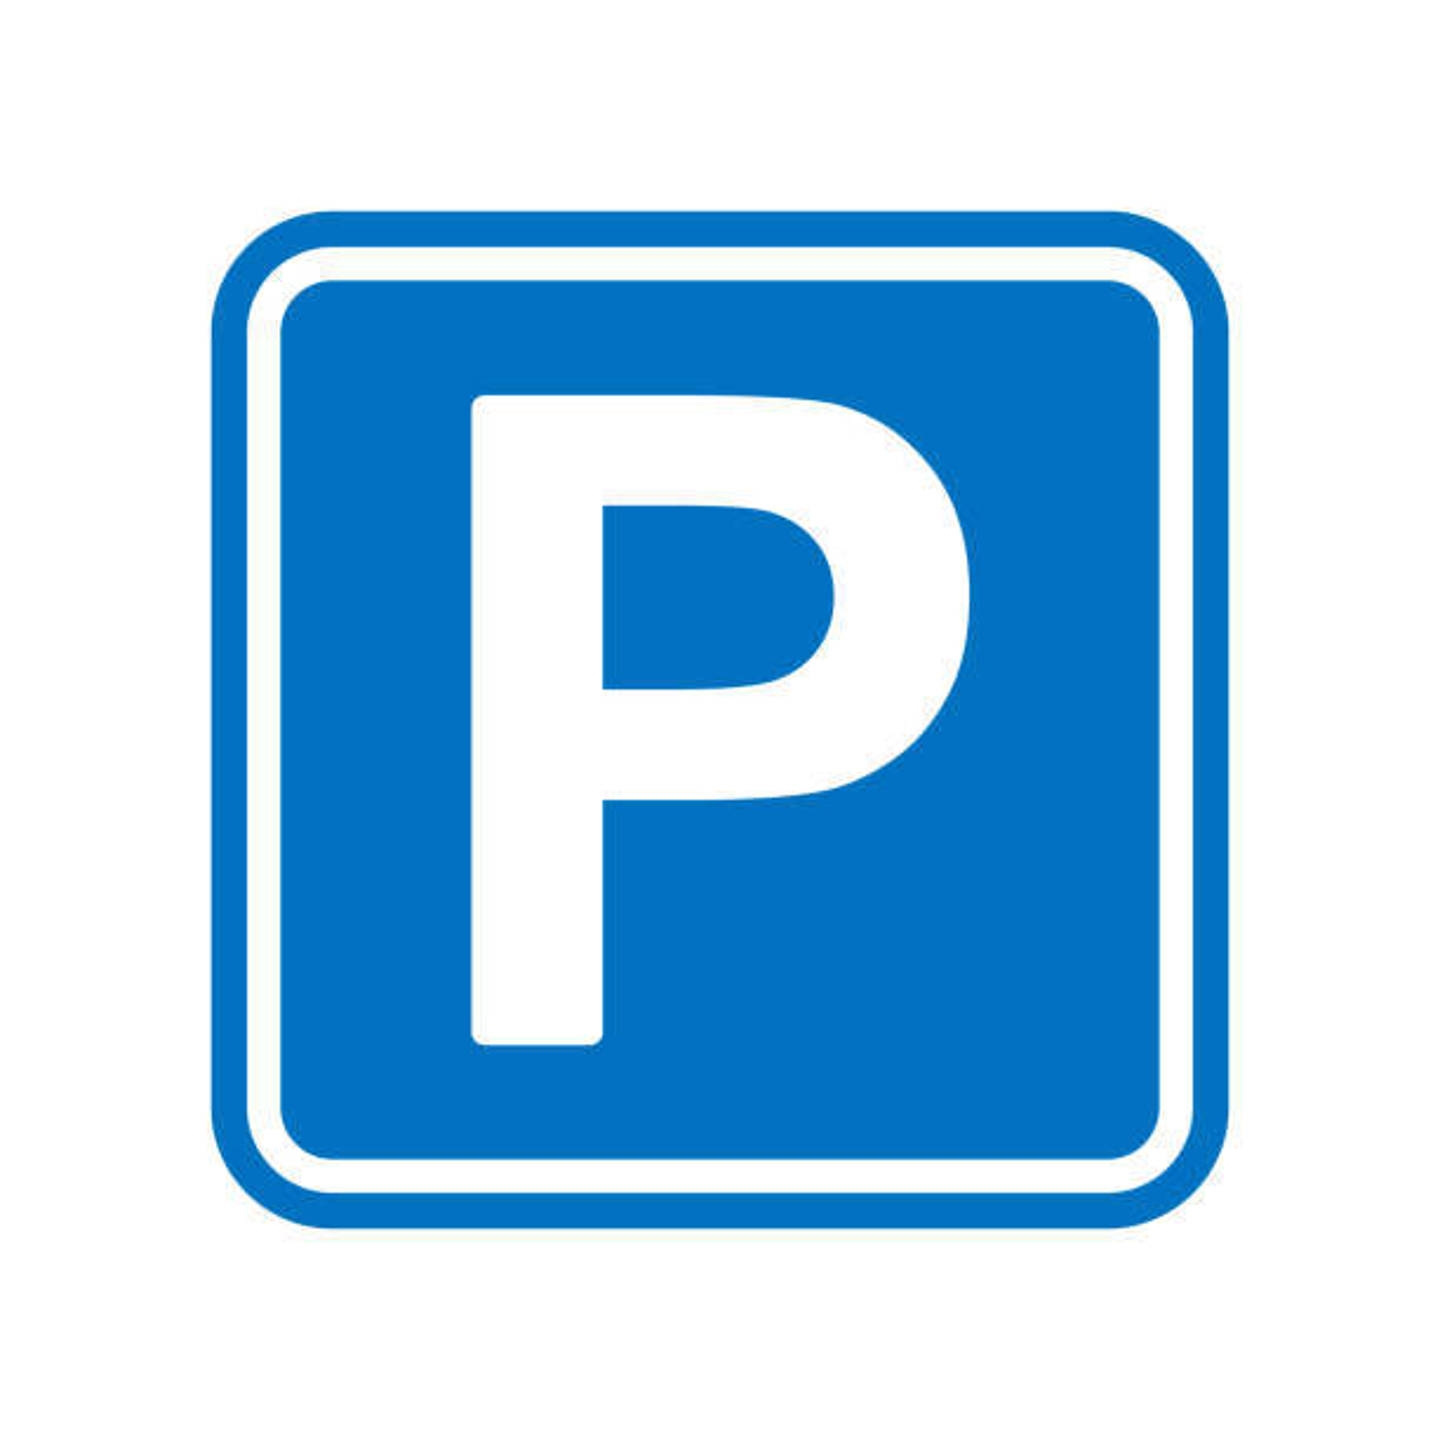 Parking / garage à vendre à Molenbeek-Saint-Jean 1080 77250.00€  chambres 12.50m² - annonce 1324620